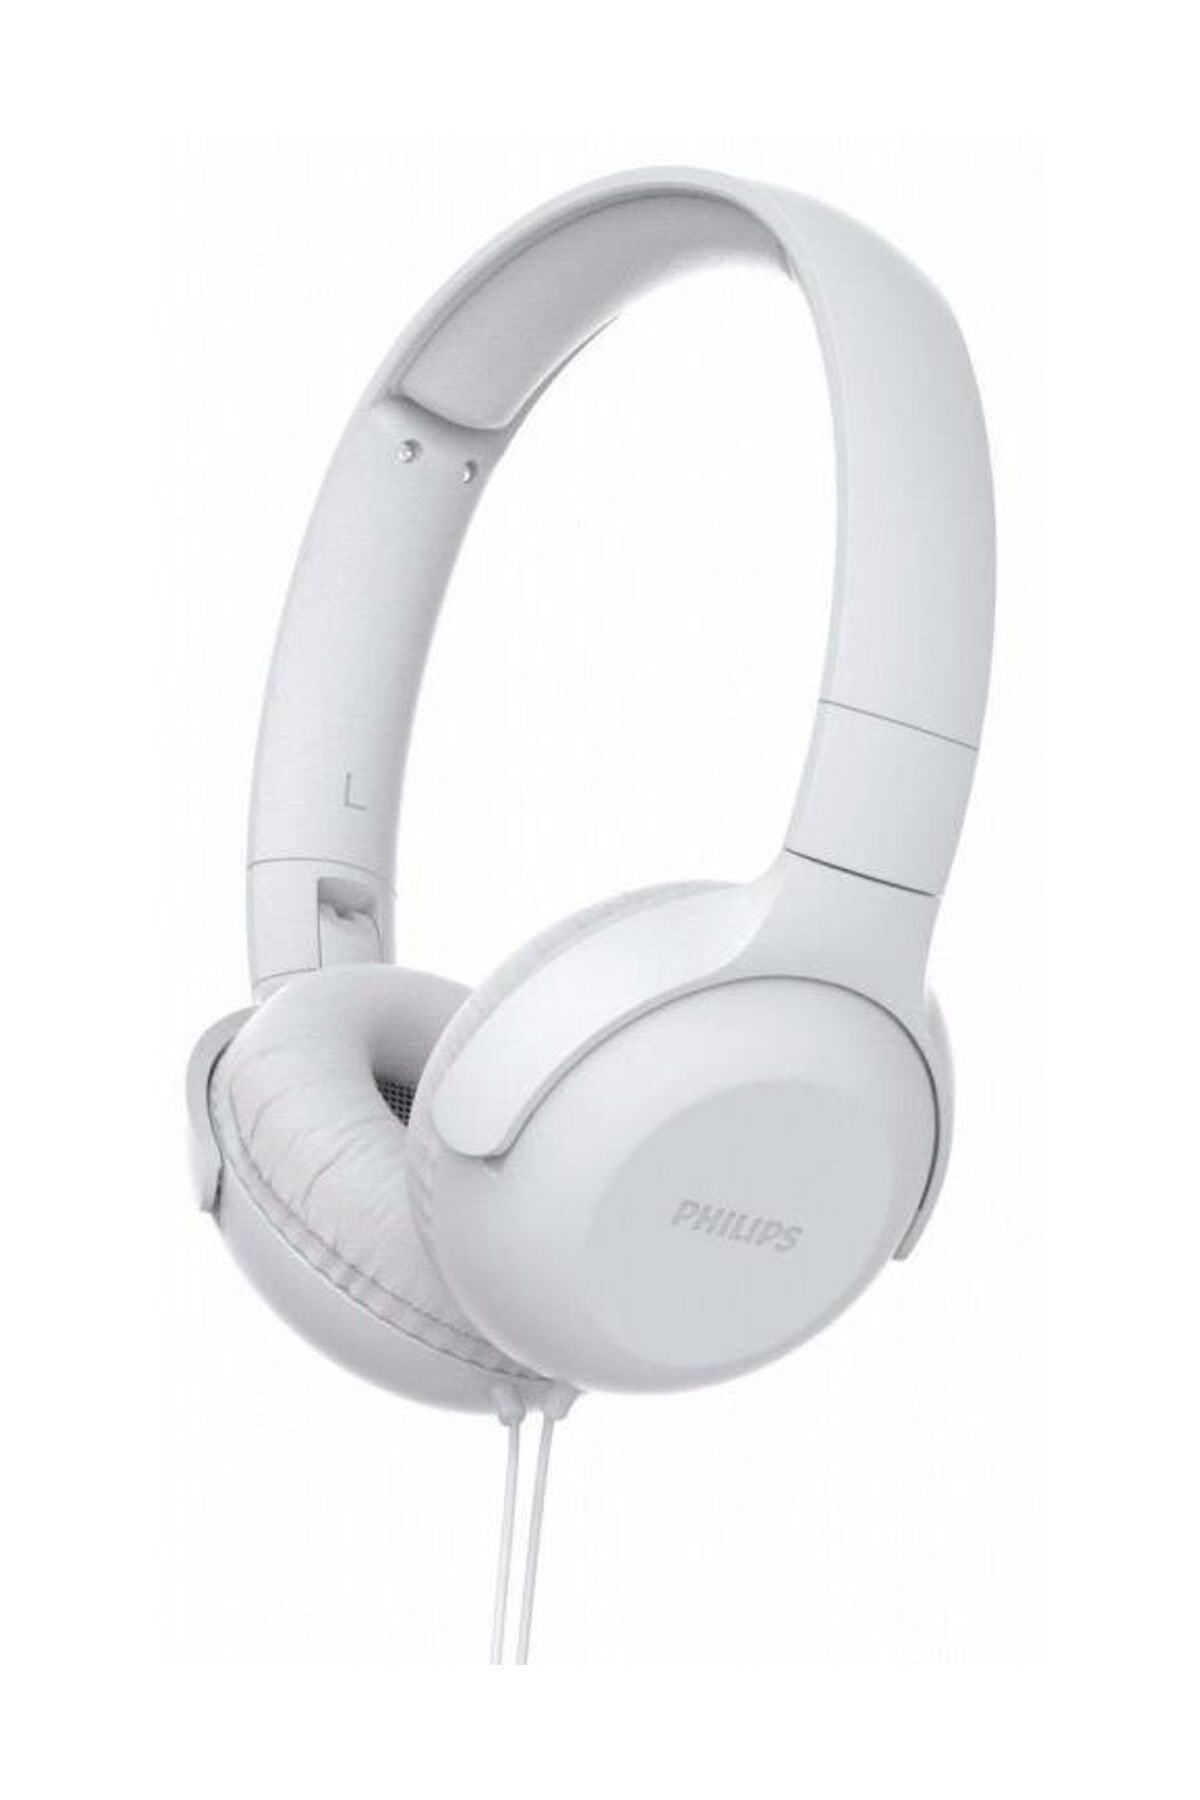 Philips TAUH201WT/00 UpBeat Mikrofonlu Kulak üstü Kulaklık - Beyaz